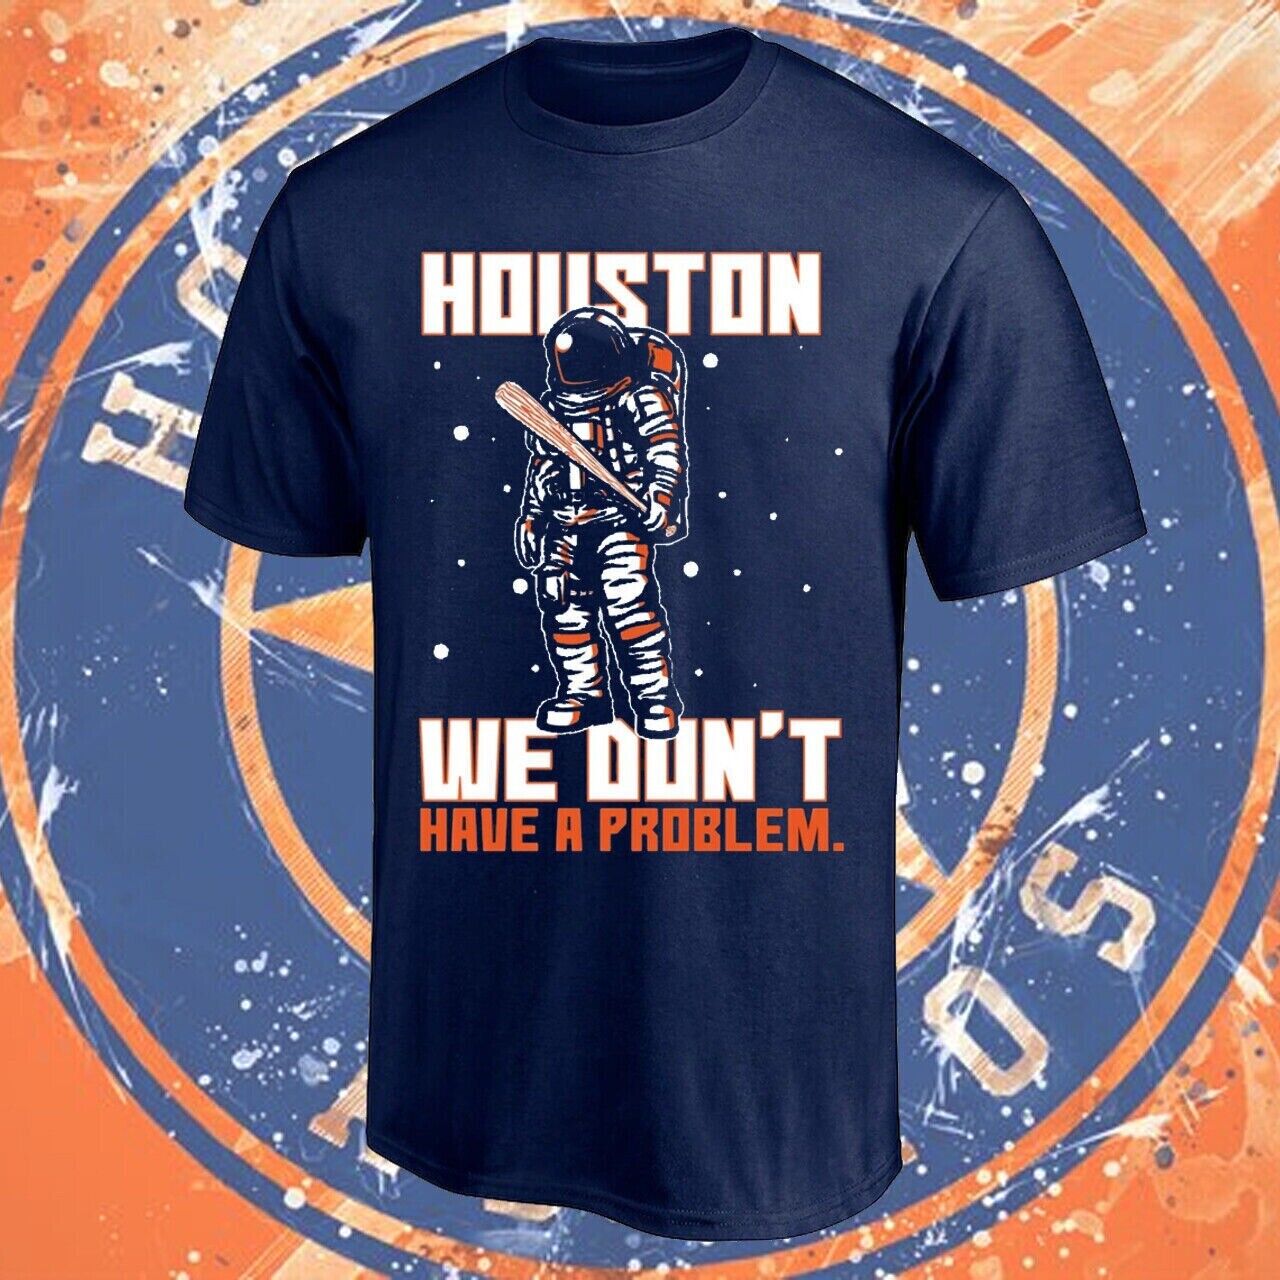 Houston Astros Mlb Baseball Sport Team Champs 2022 Gift Men Women T-shirt Hot Full Size Up To 5xl